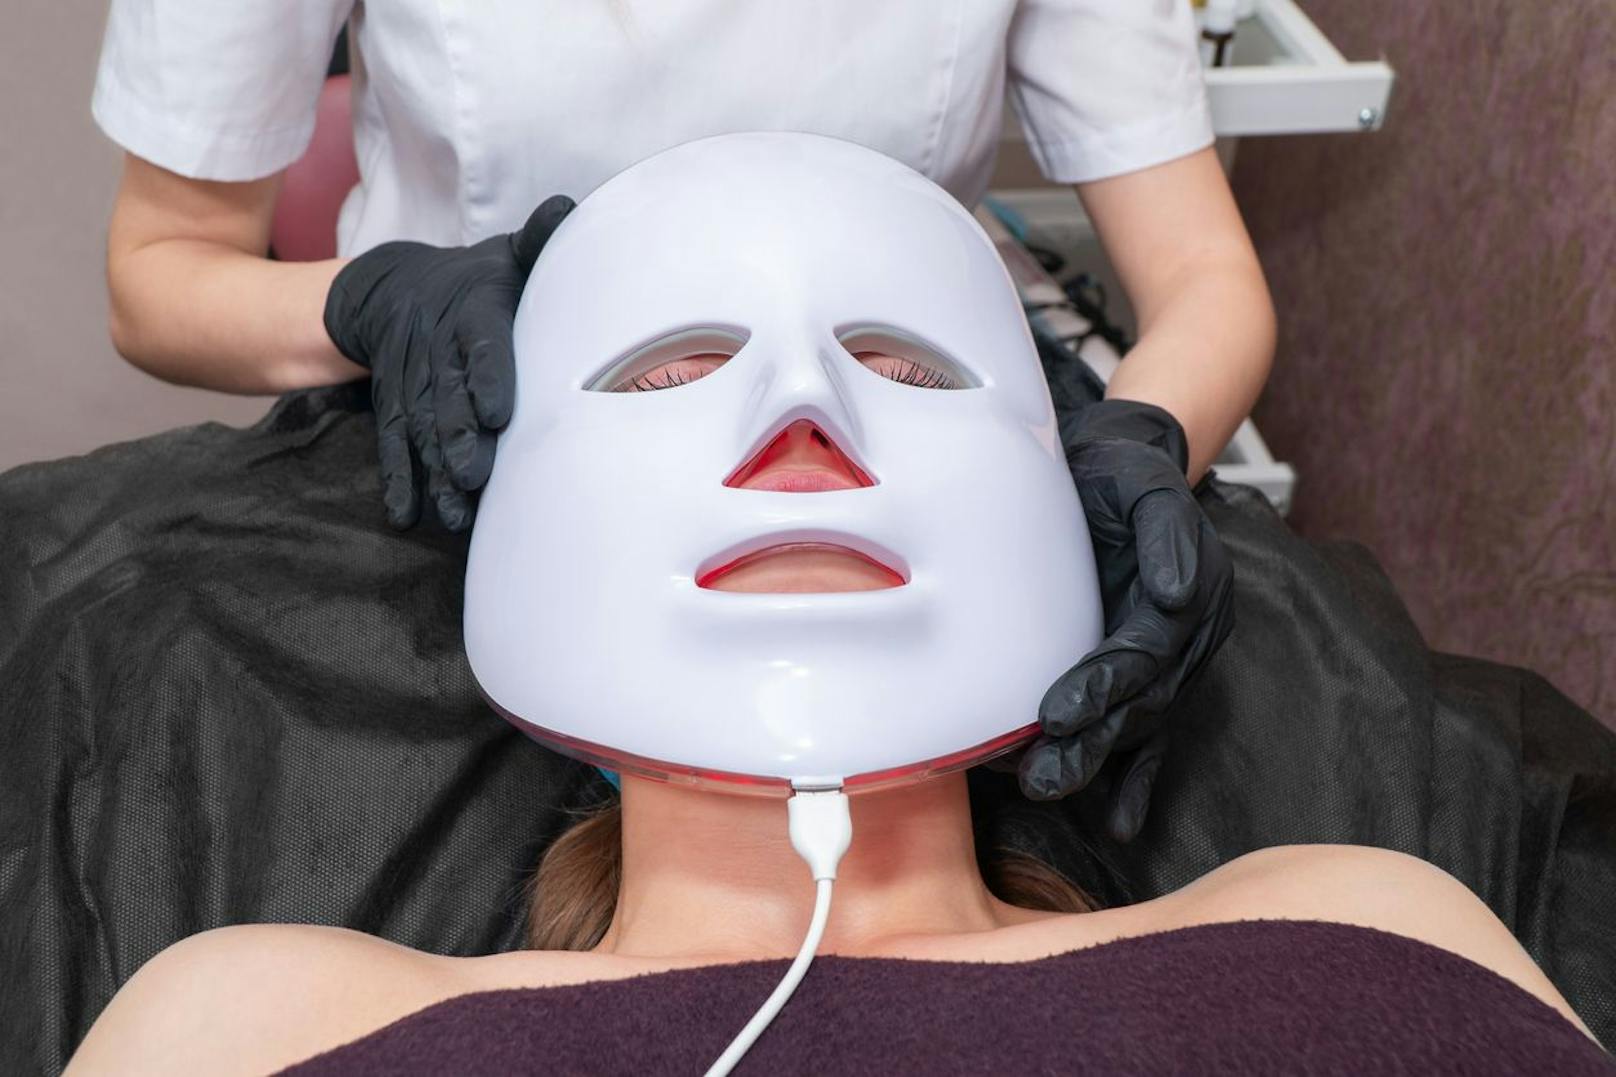 Mit den elektrischen Impulsen hilft dir die Maske, ein besseres Hautbild zu bekommen.